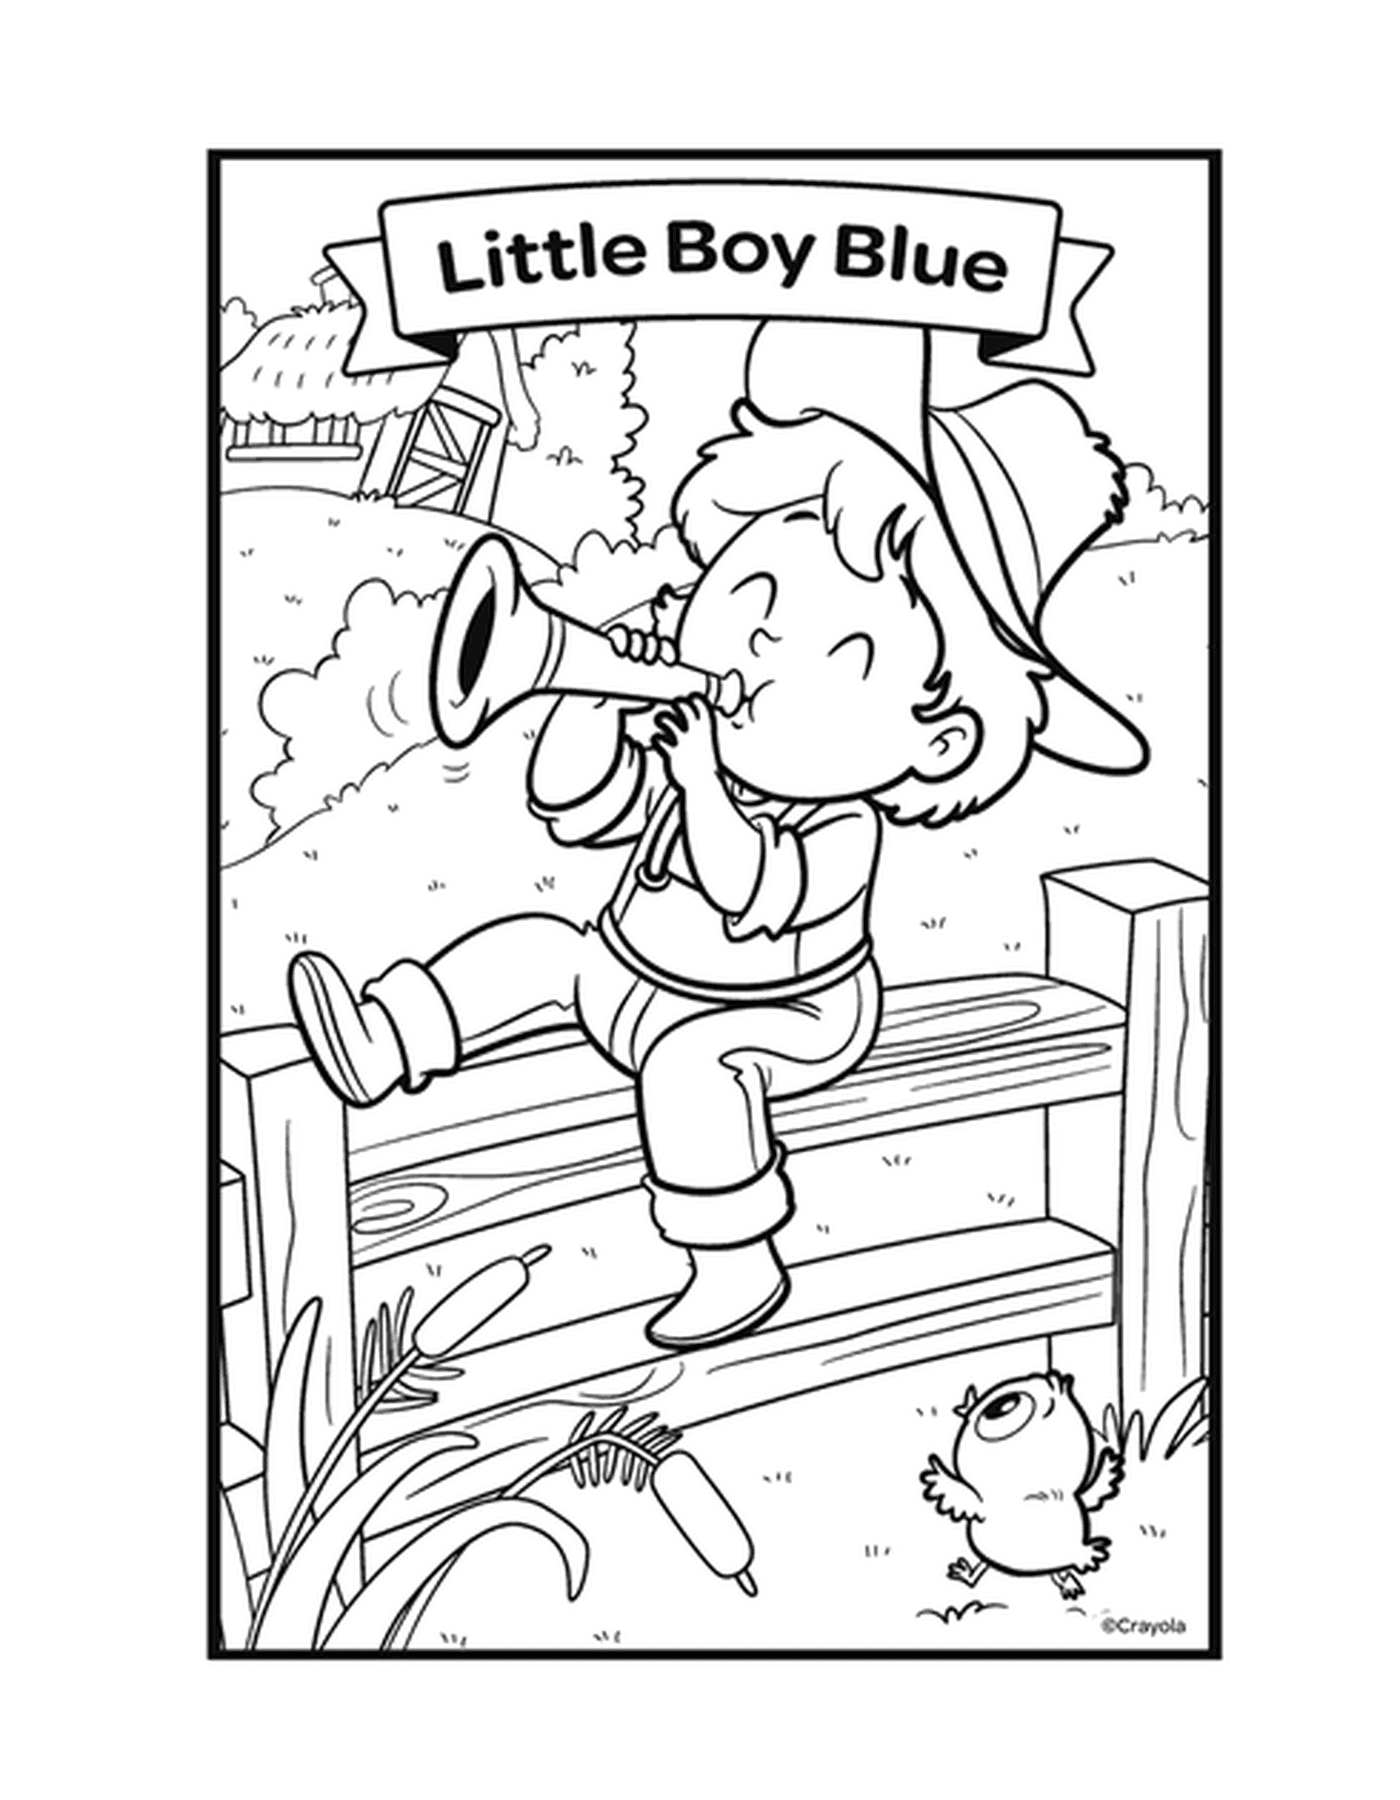  La rima El niño azul con un niño tocando la trompeta en un banco 